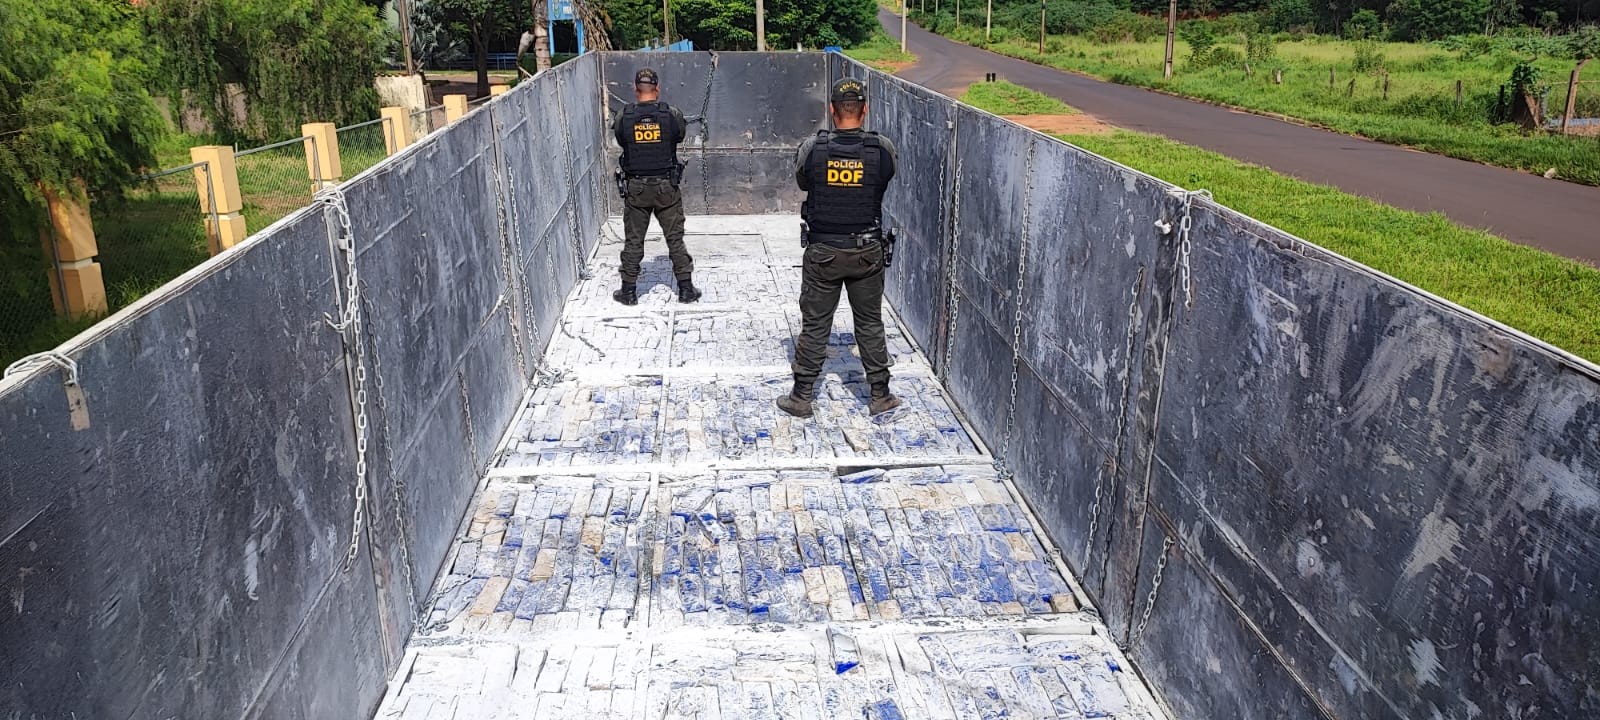 Operação apreende mais de 2 toneladas de maconha em fundo falso de carreta na fronteira do Paraguai